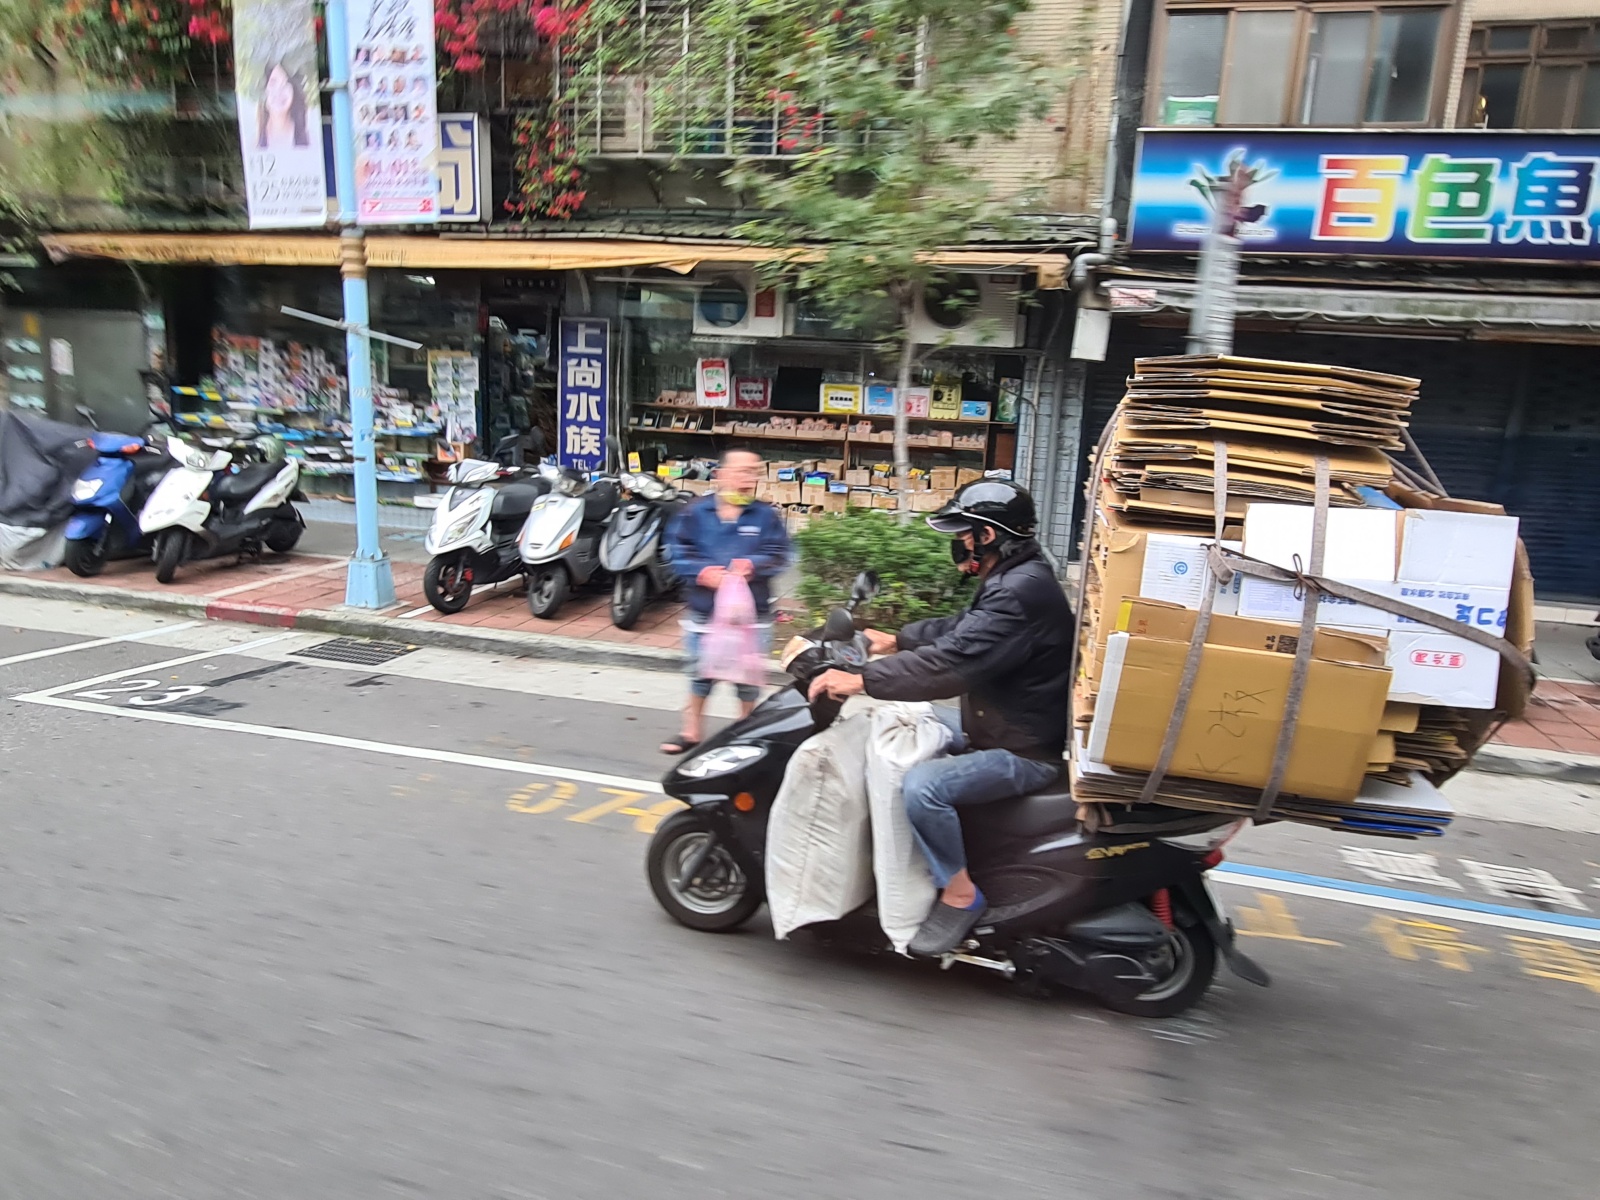 V uliciach Taipei sa pohybujú aj takto naložené skútre.